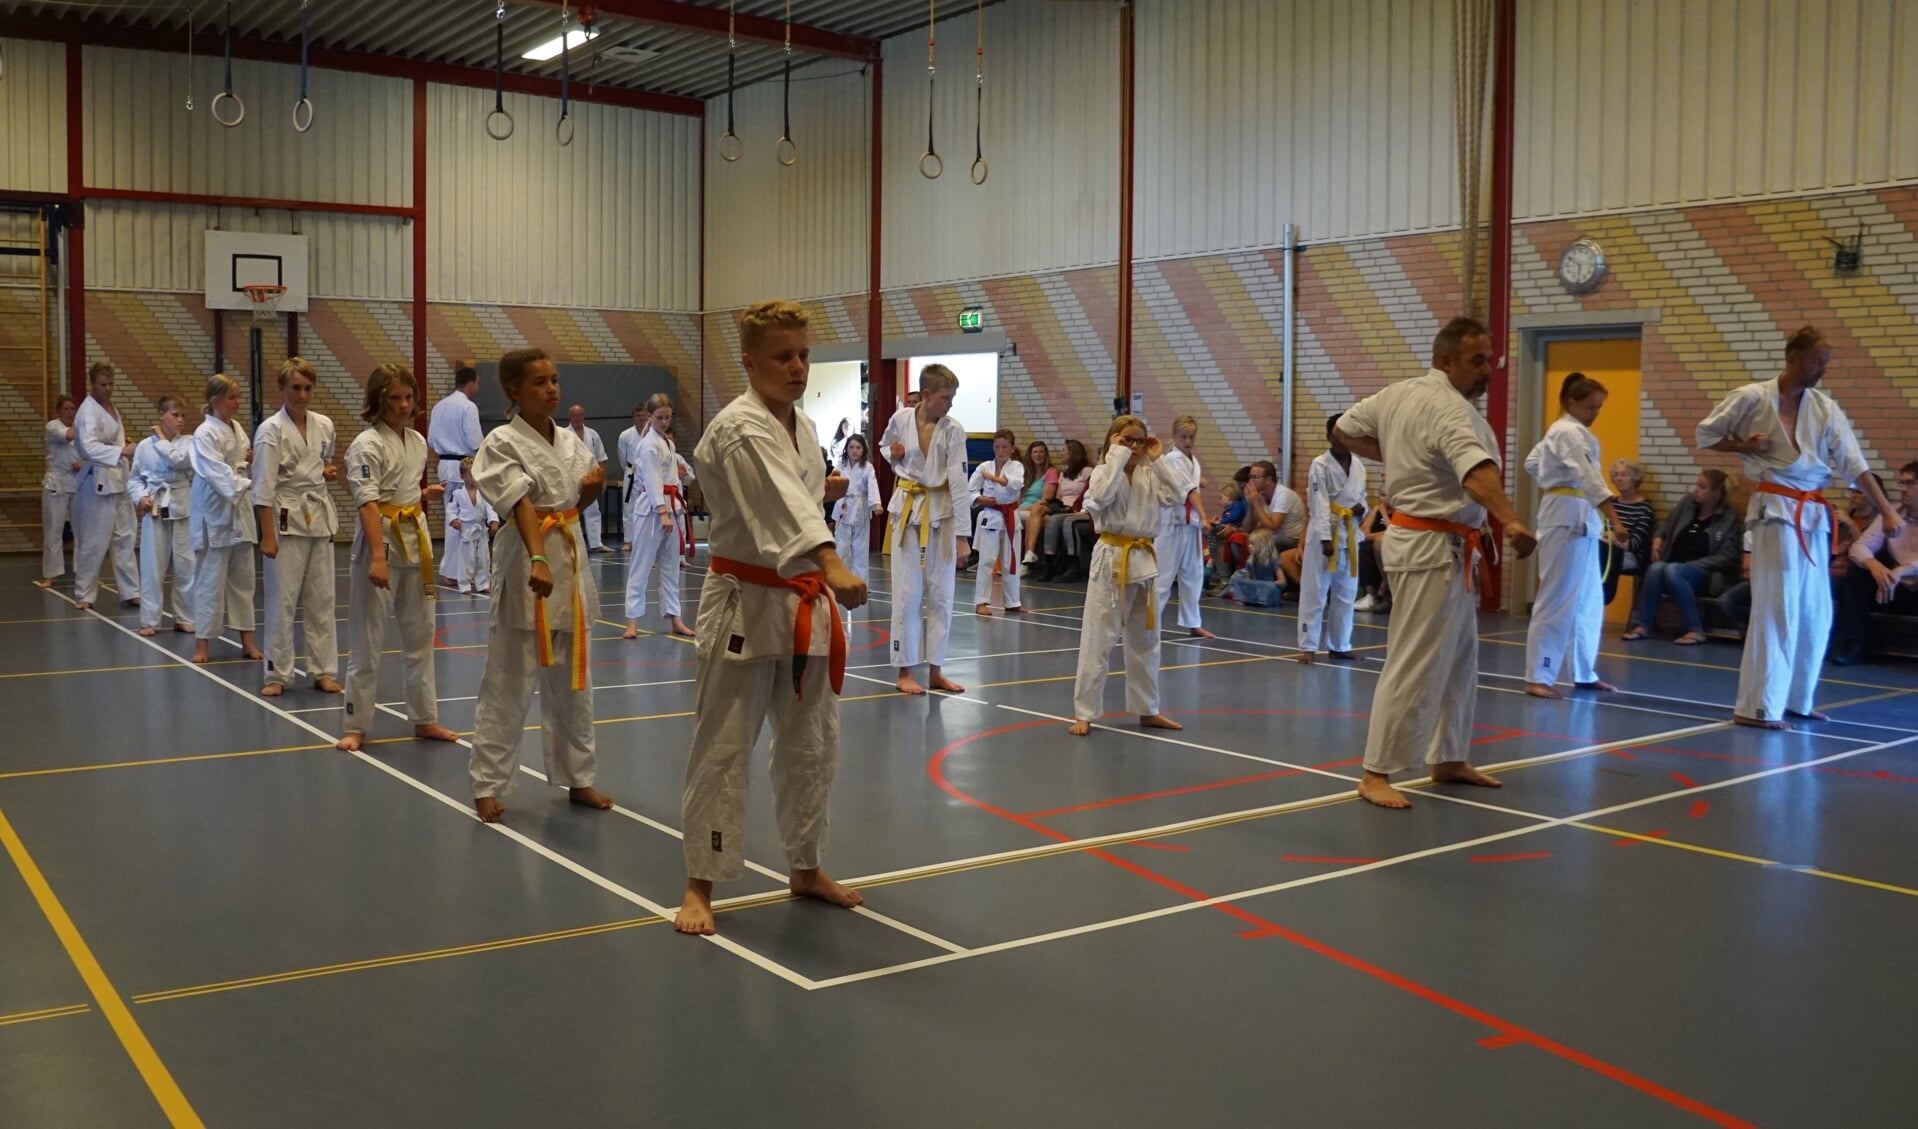 Leden van Shima leggen het karate-examen af.